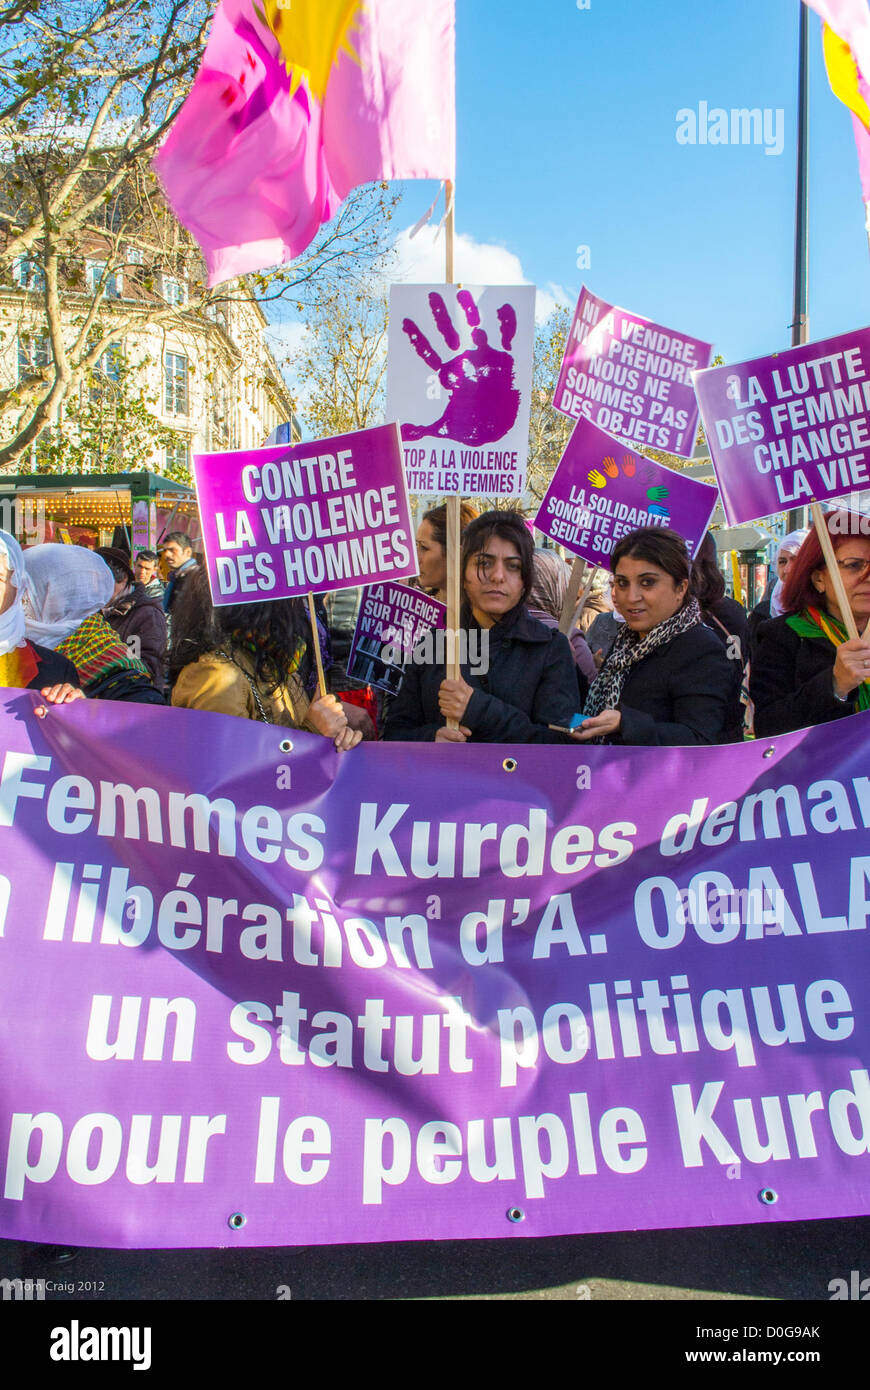 Paris, France, foule tenant des signes de protestation, de différents groupes féministes, a organisé une marche contre la violence à l'égard des femmes, Journée internationale des droits des femmes, Kurdes, marche des droits des femmes, femmes kurdes Banque D'Images